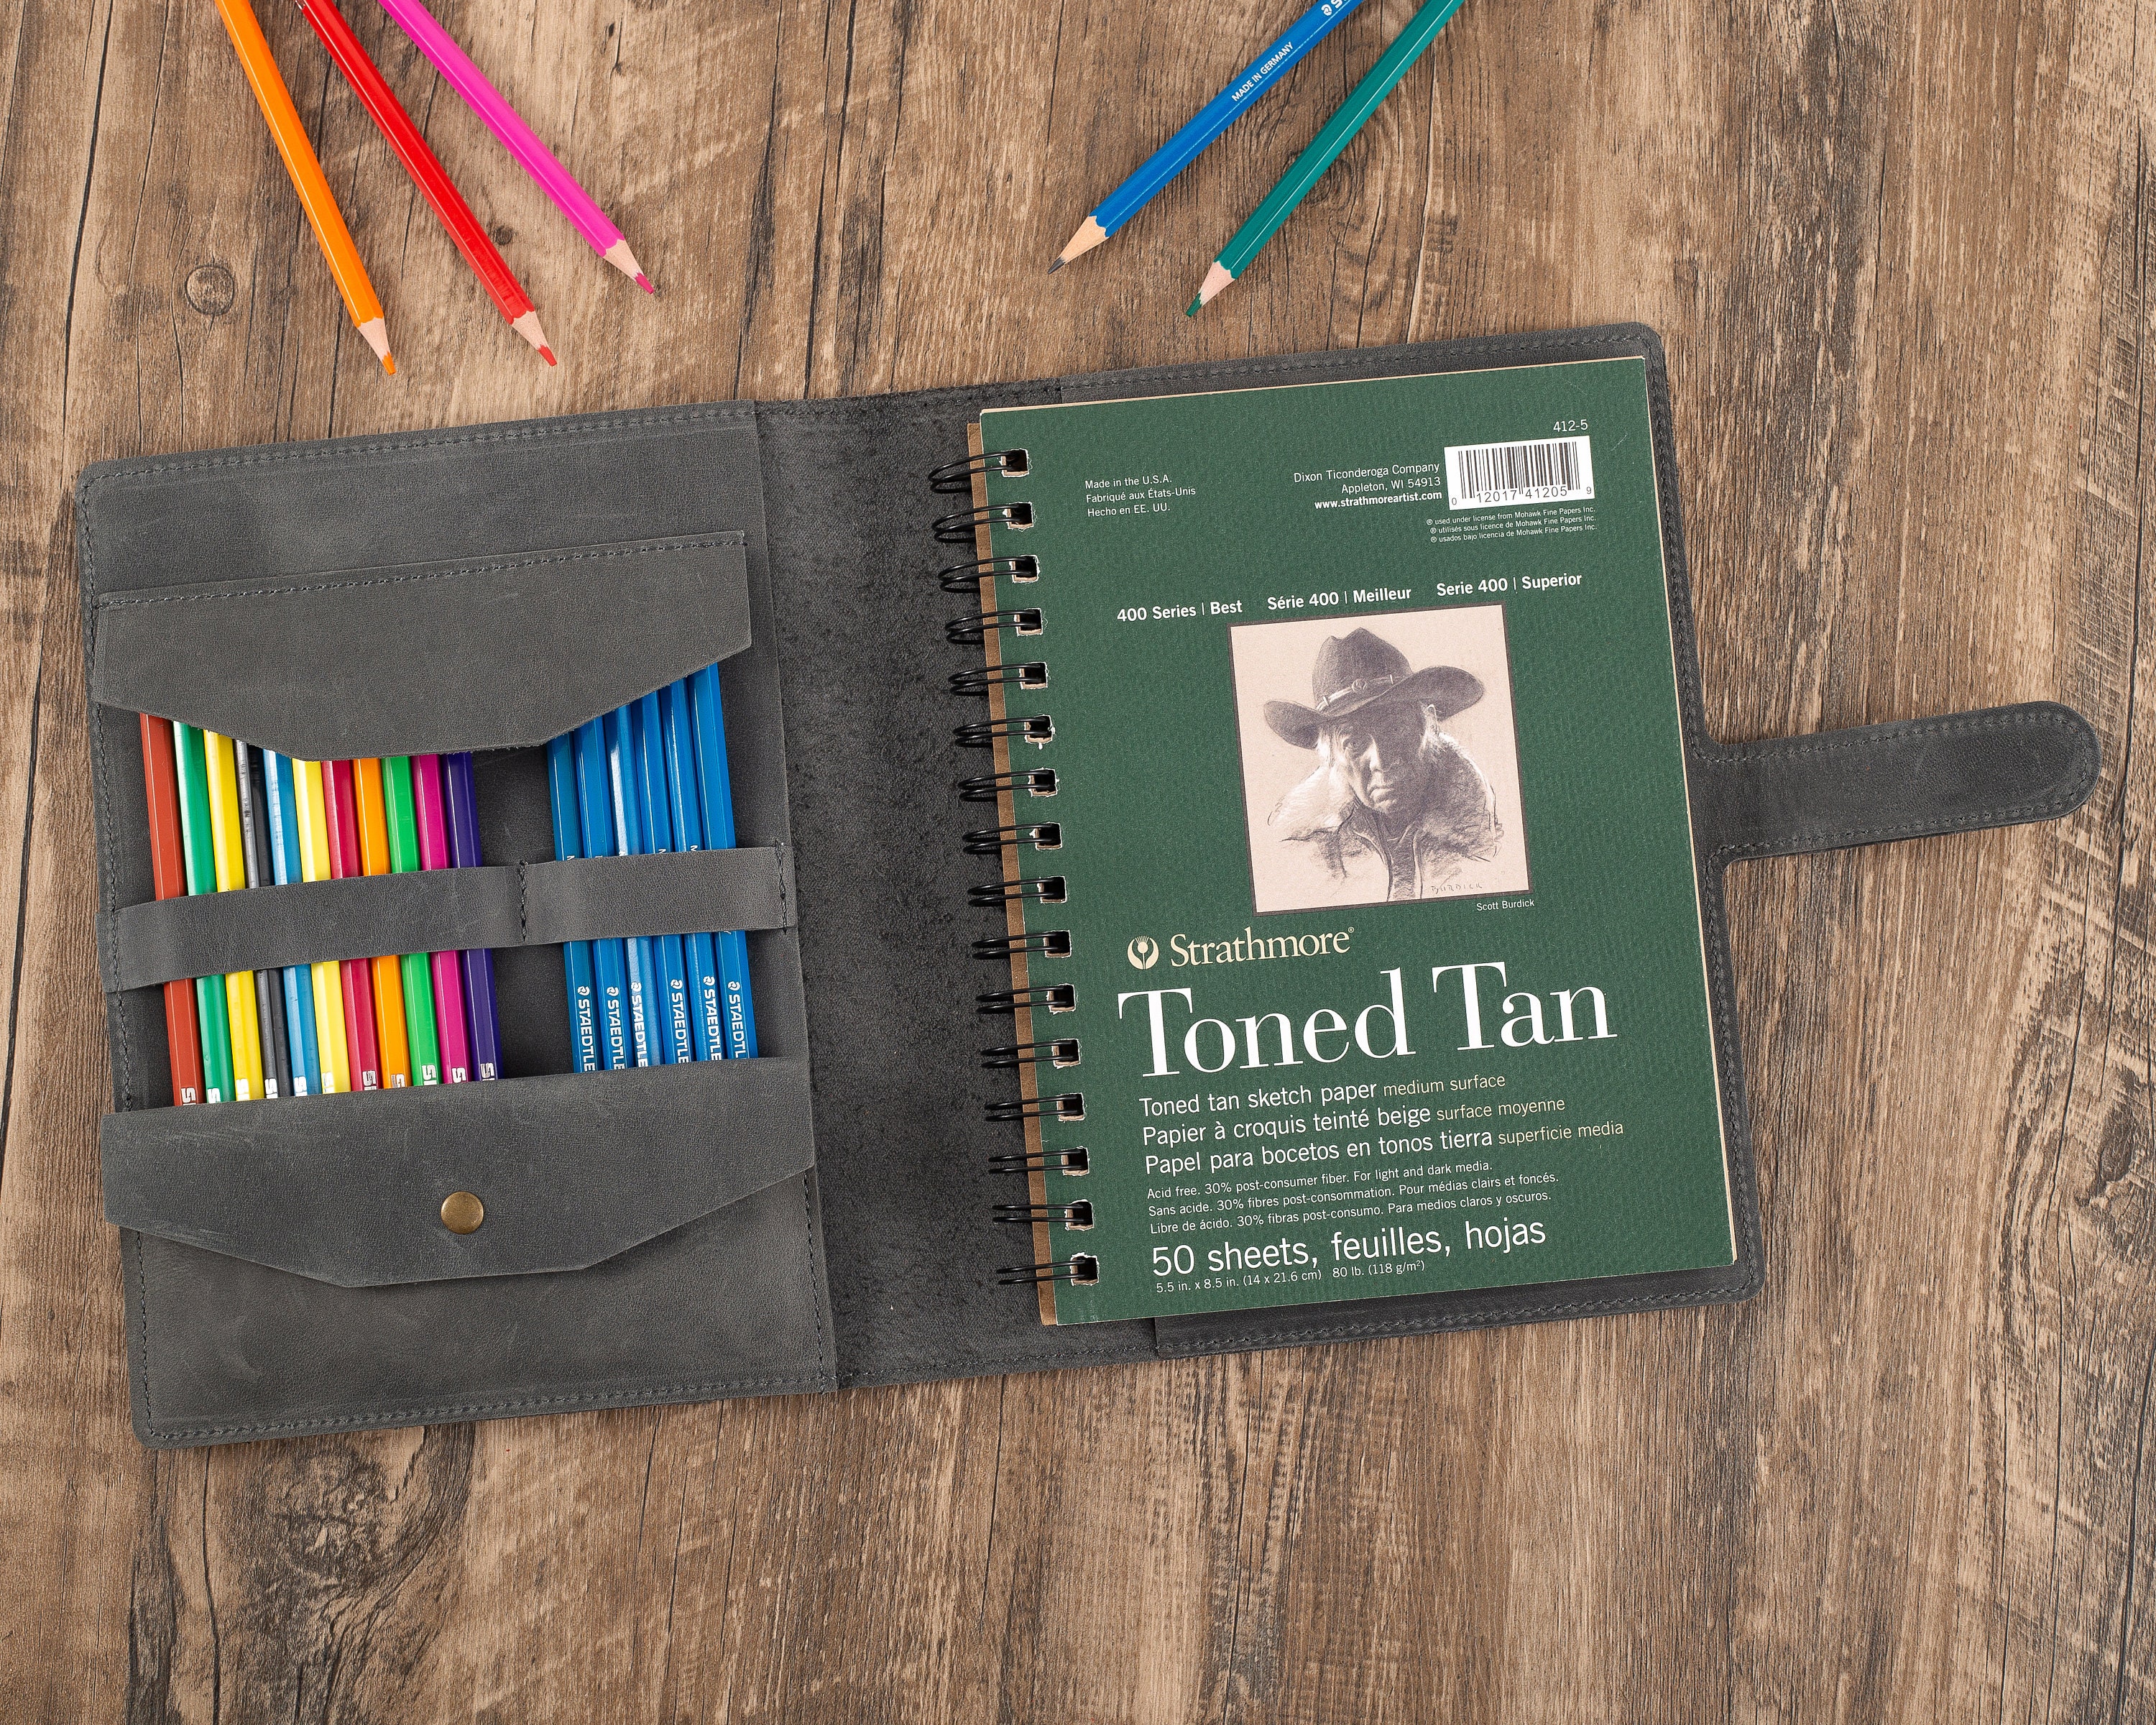 Robrasim Handmade Leather Sketchbook Cover, Artist Sketch Pad Holder for  9X12 Top Spiral Bound Sketchbook, Drawing Book Pencil Case, Journal